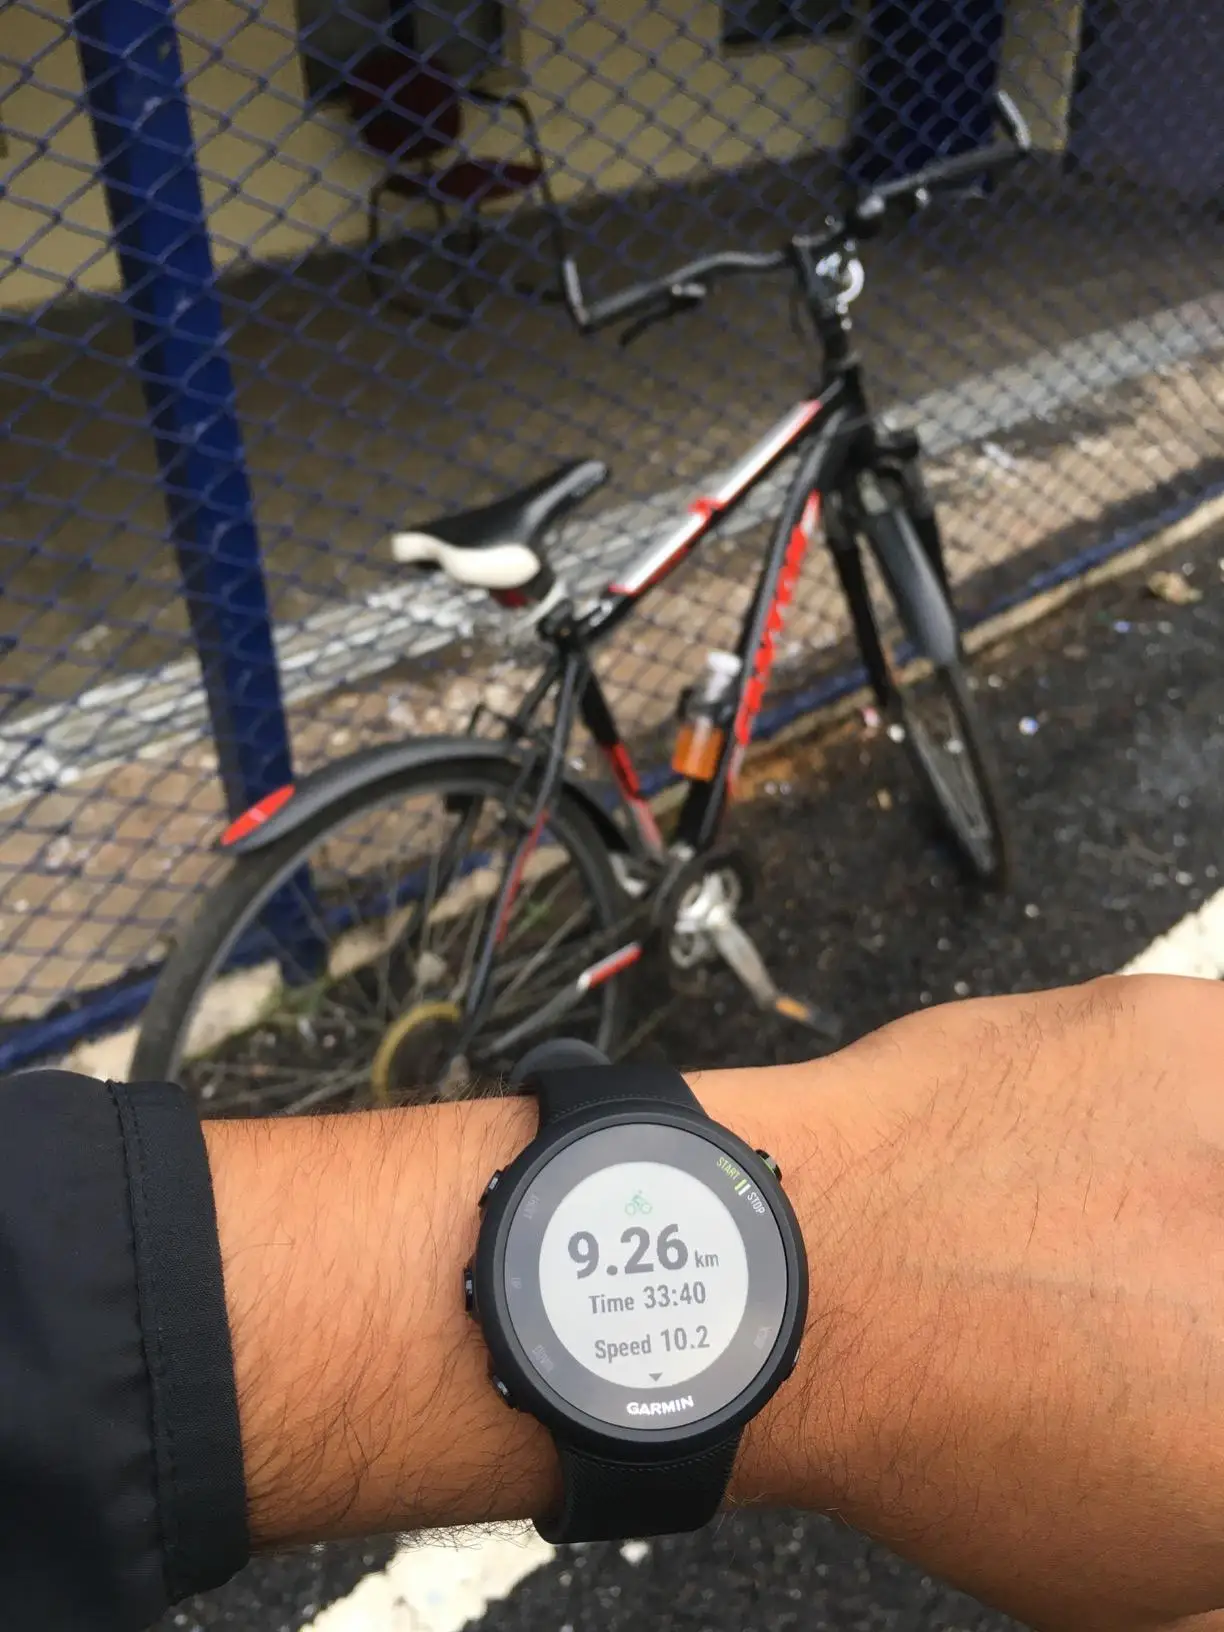 Оригинальные Смарт-часы Garmin Forerunner 45 с GPS для бега и мониторинга сердечного ритма